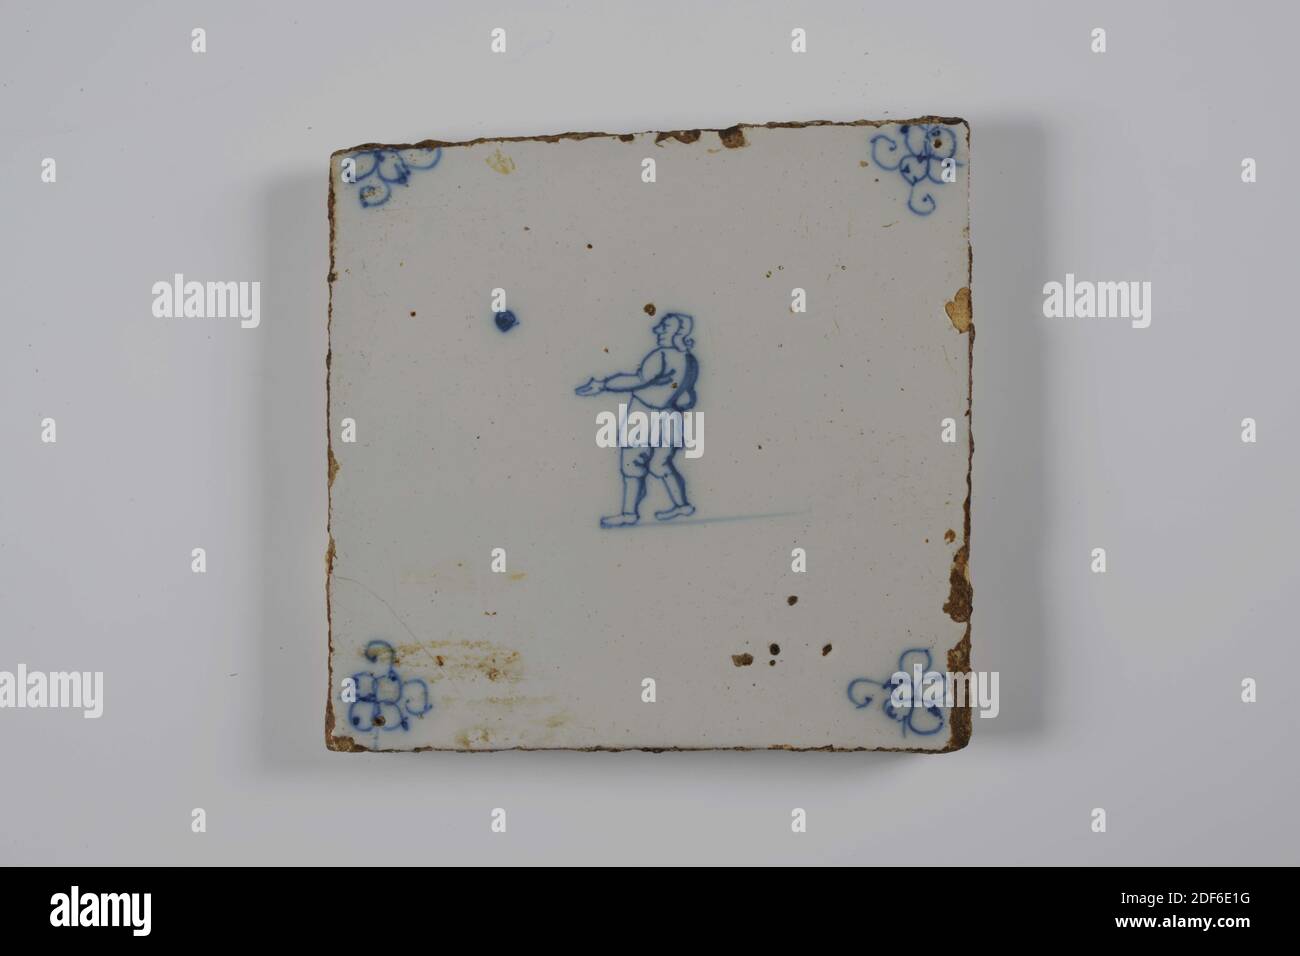 Carreau de mur, Anonyme, entre 1775-1850, glaçure d'étain, faïence, général: 12.8 x 13 x 1 cm (128 x 130 x 10mm), jeu d'enfant, garçon, carreau de mur de faïence recouvert de glaçure d'étain et peint en bleu. Le jeu de l'enfant est représenté sur le carreau. La tuile au centre représente un garçon orienté à gauche avec une balle. Le garçon a la main gauche orientée vers l'avant. La tuile a une araignée comme un motif de coin, 1995 Banque D'Images